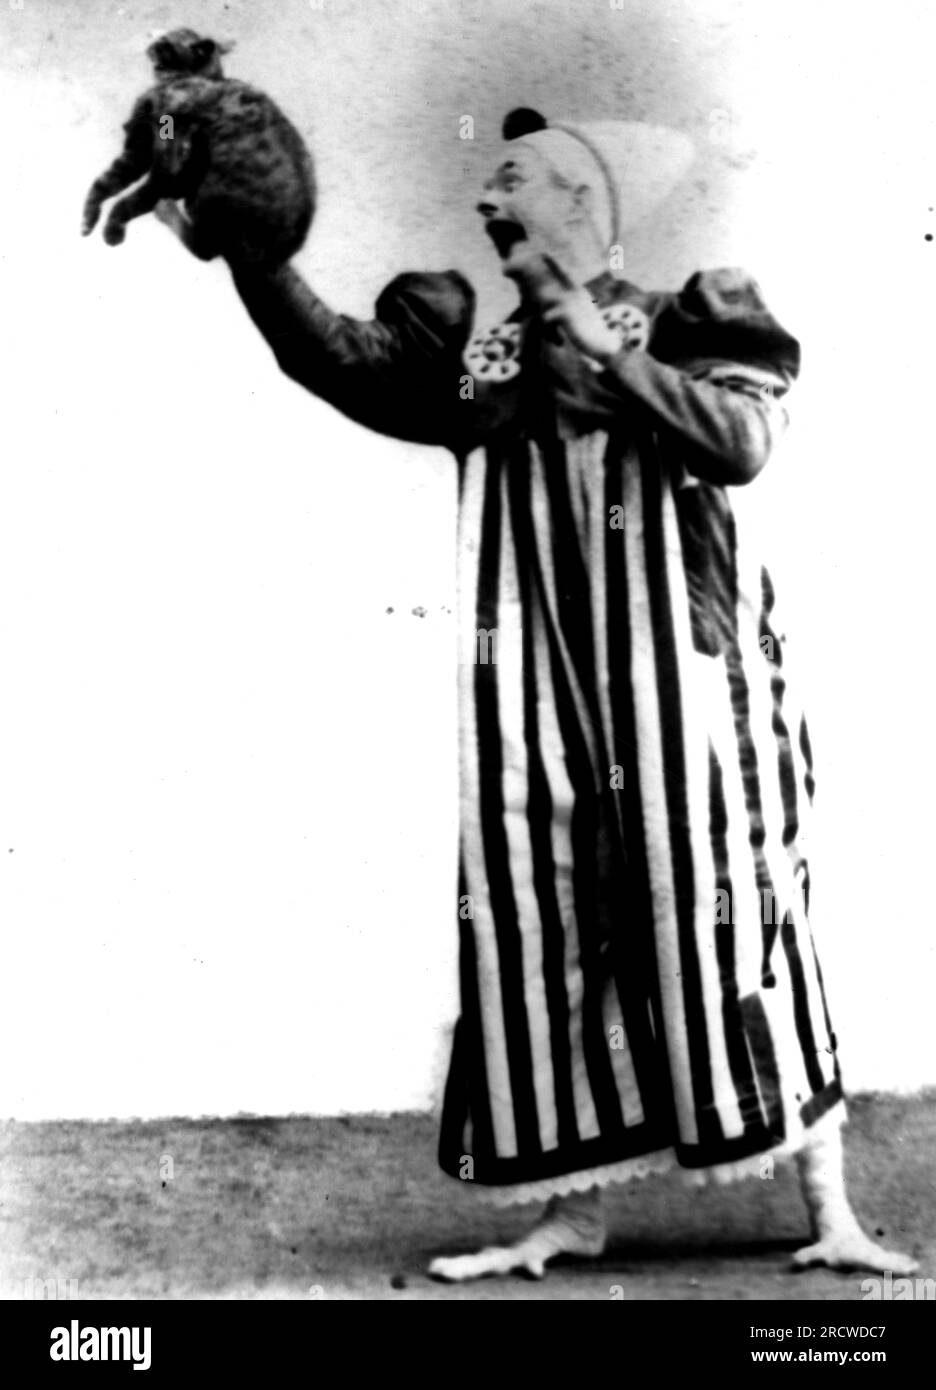 zirkus, Clown, Clown mit Katze, Ende des 19. Jahrhunderts, ZUSÄTZLICHE-RECHTE-FREIGABE-INFO-NICHT-VERFÜGBAR Stockfoto